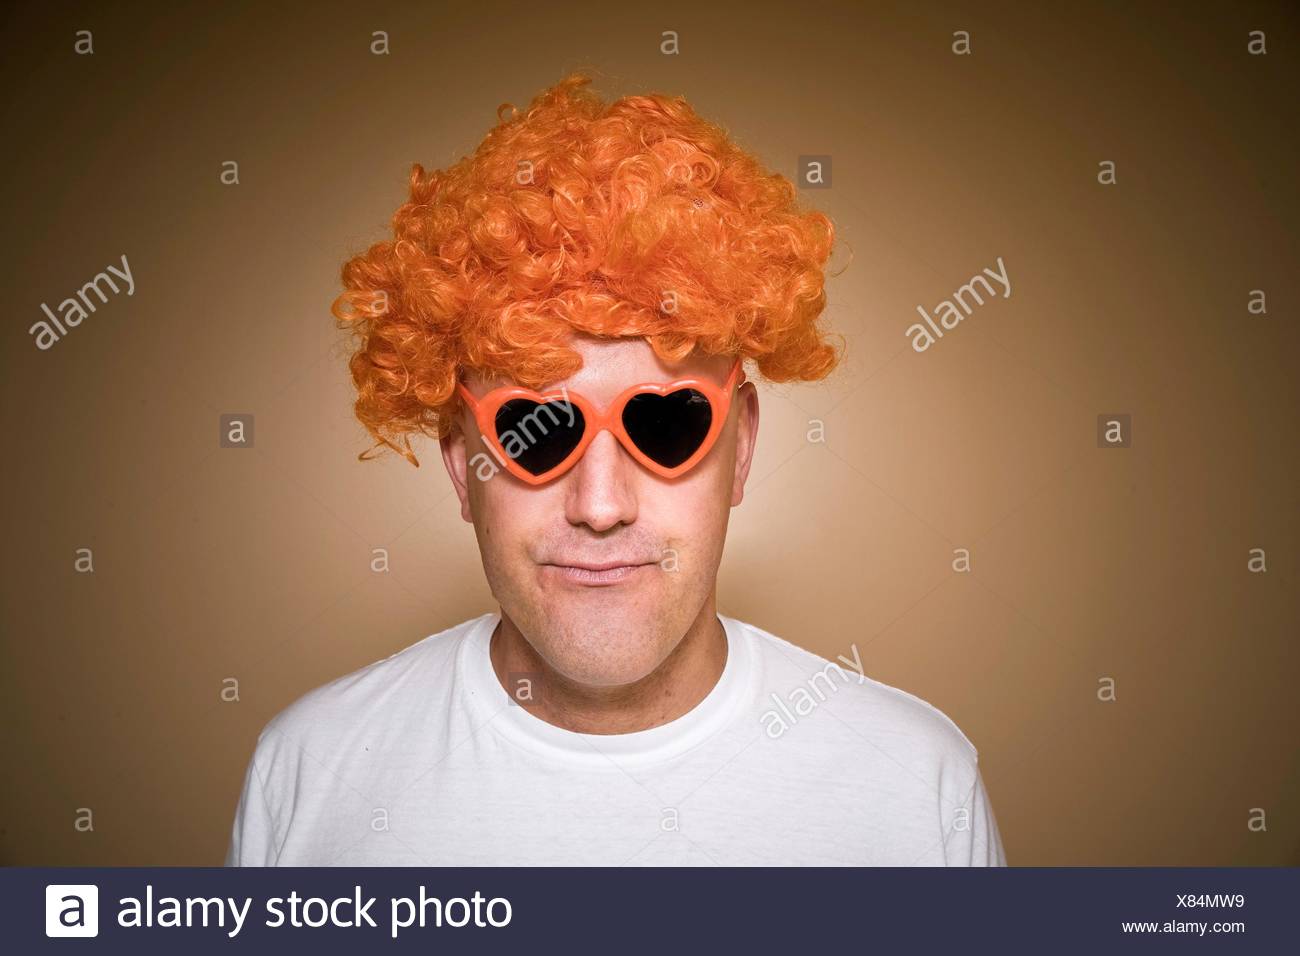 perruque orange homme